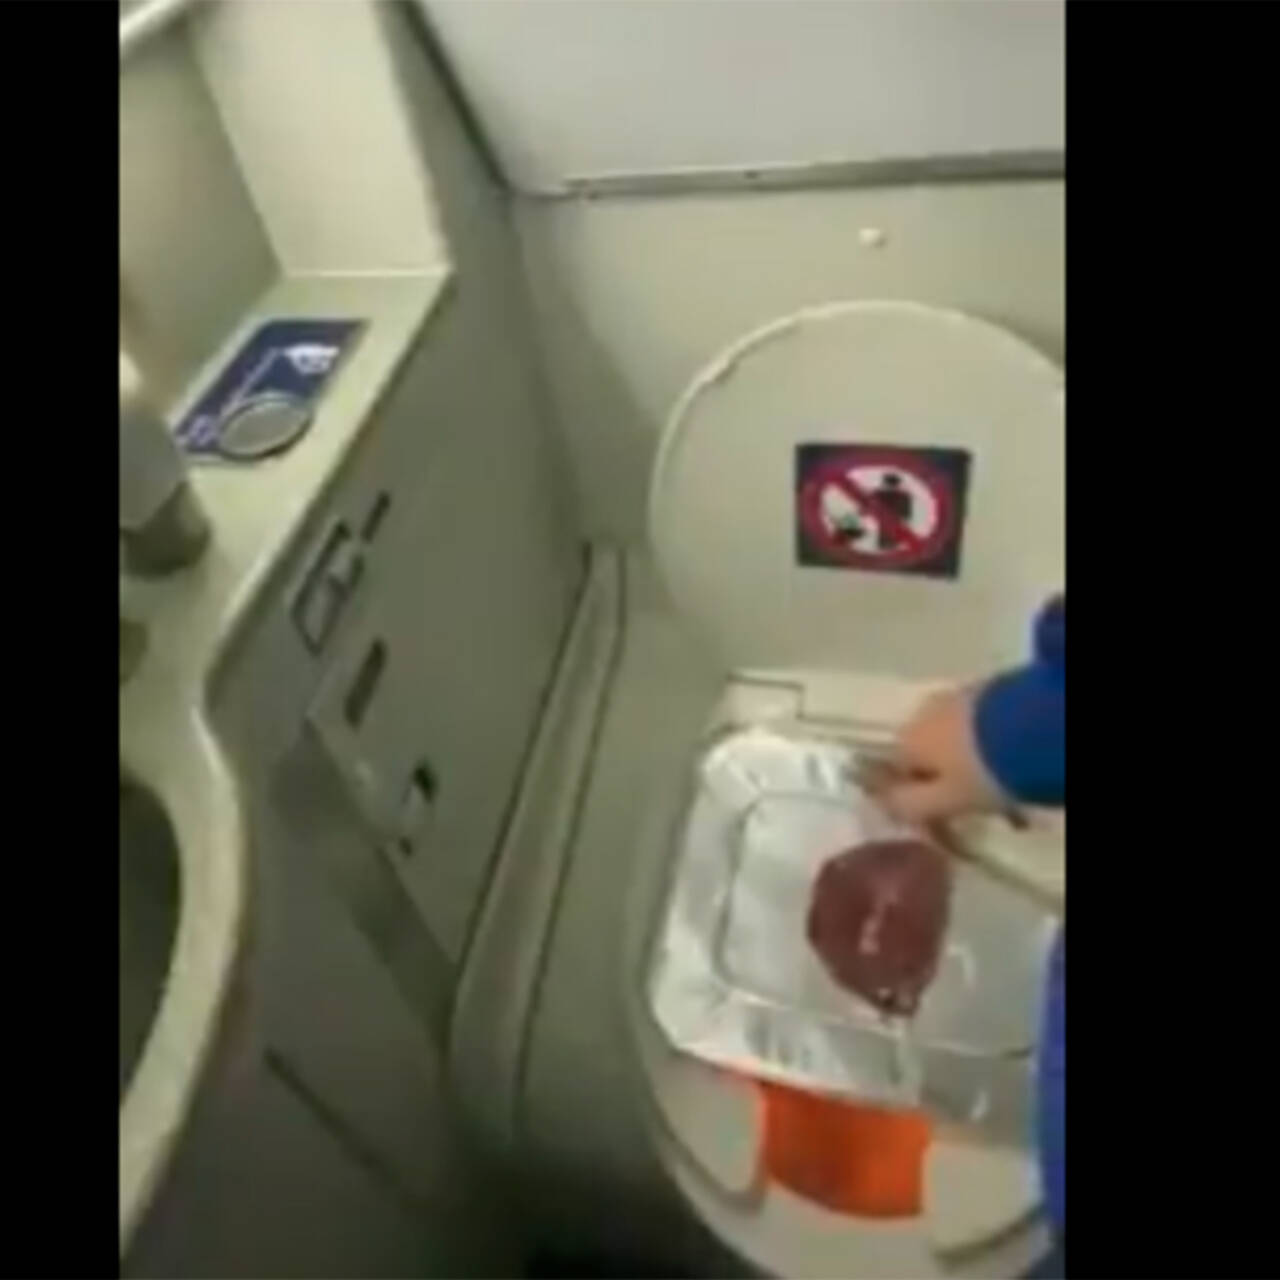 Трахаются в туалете на борту самолета